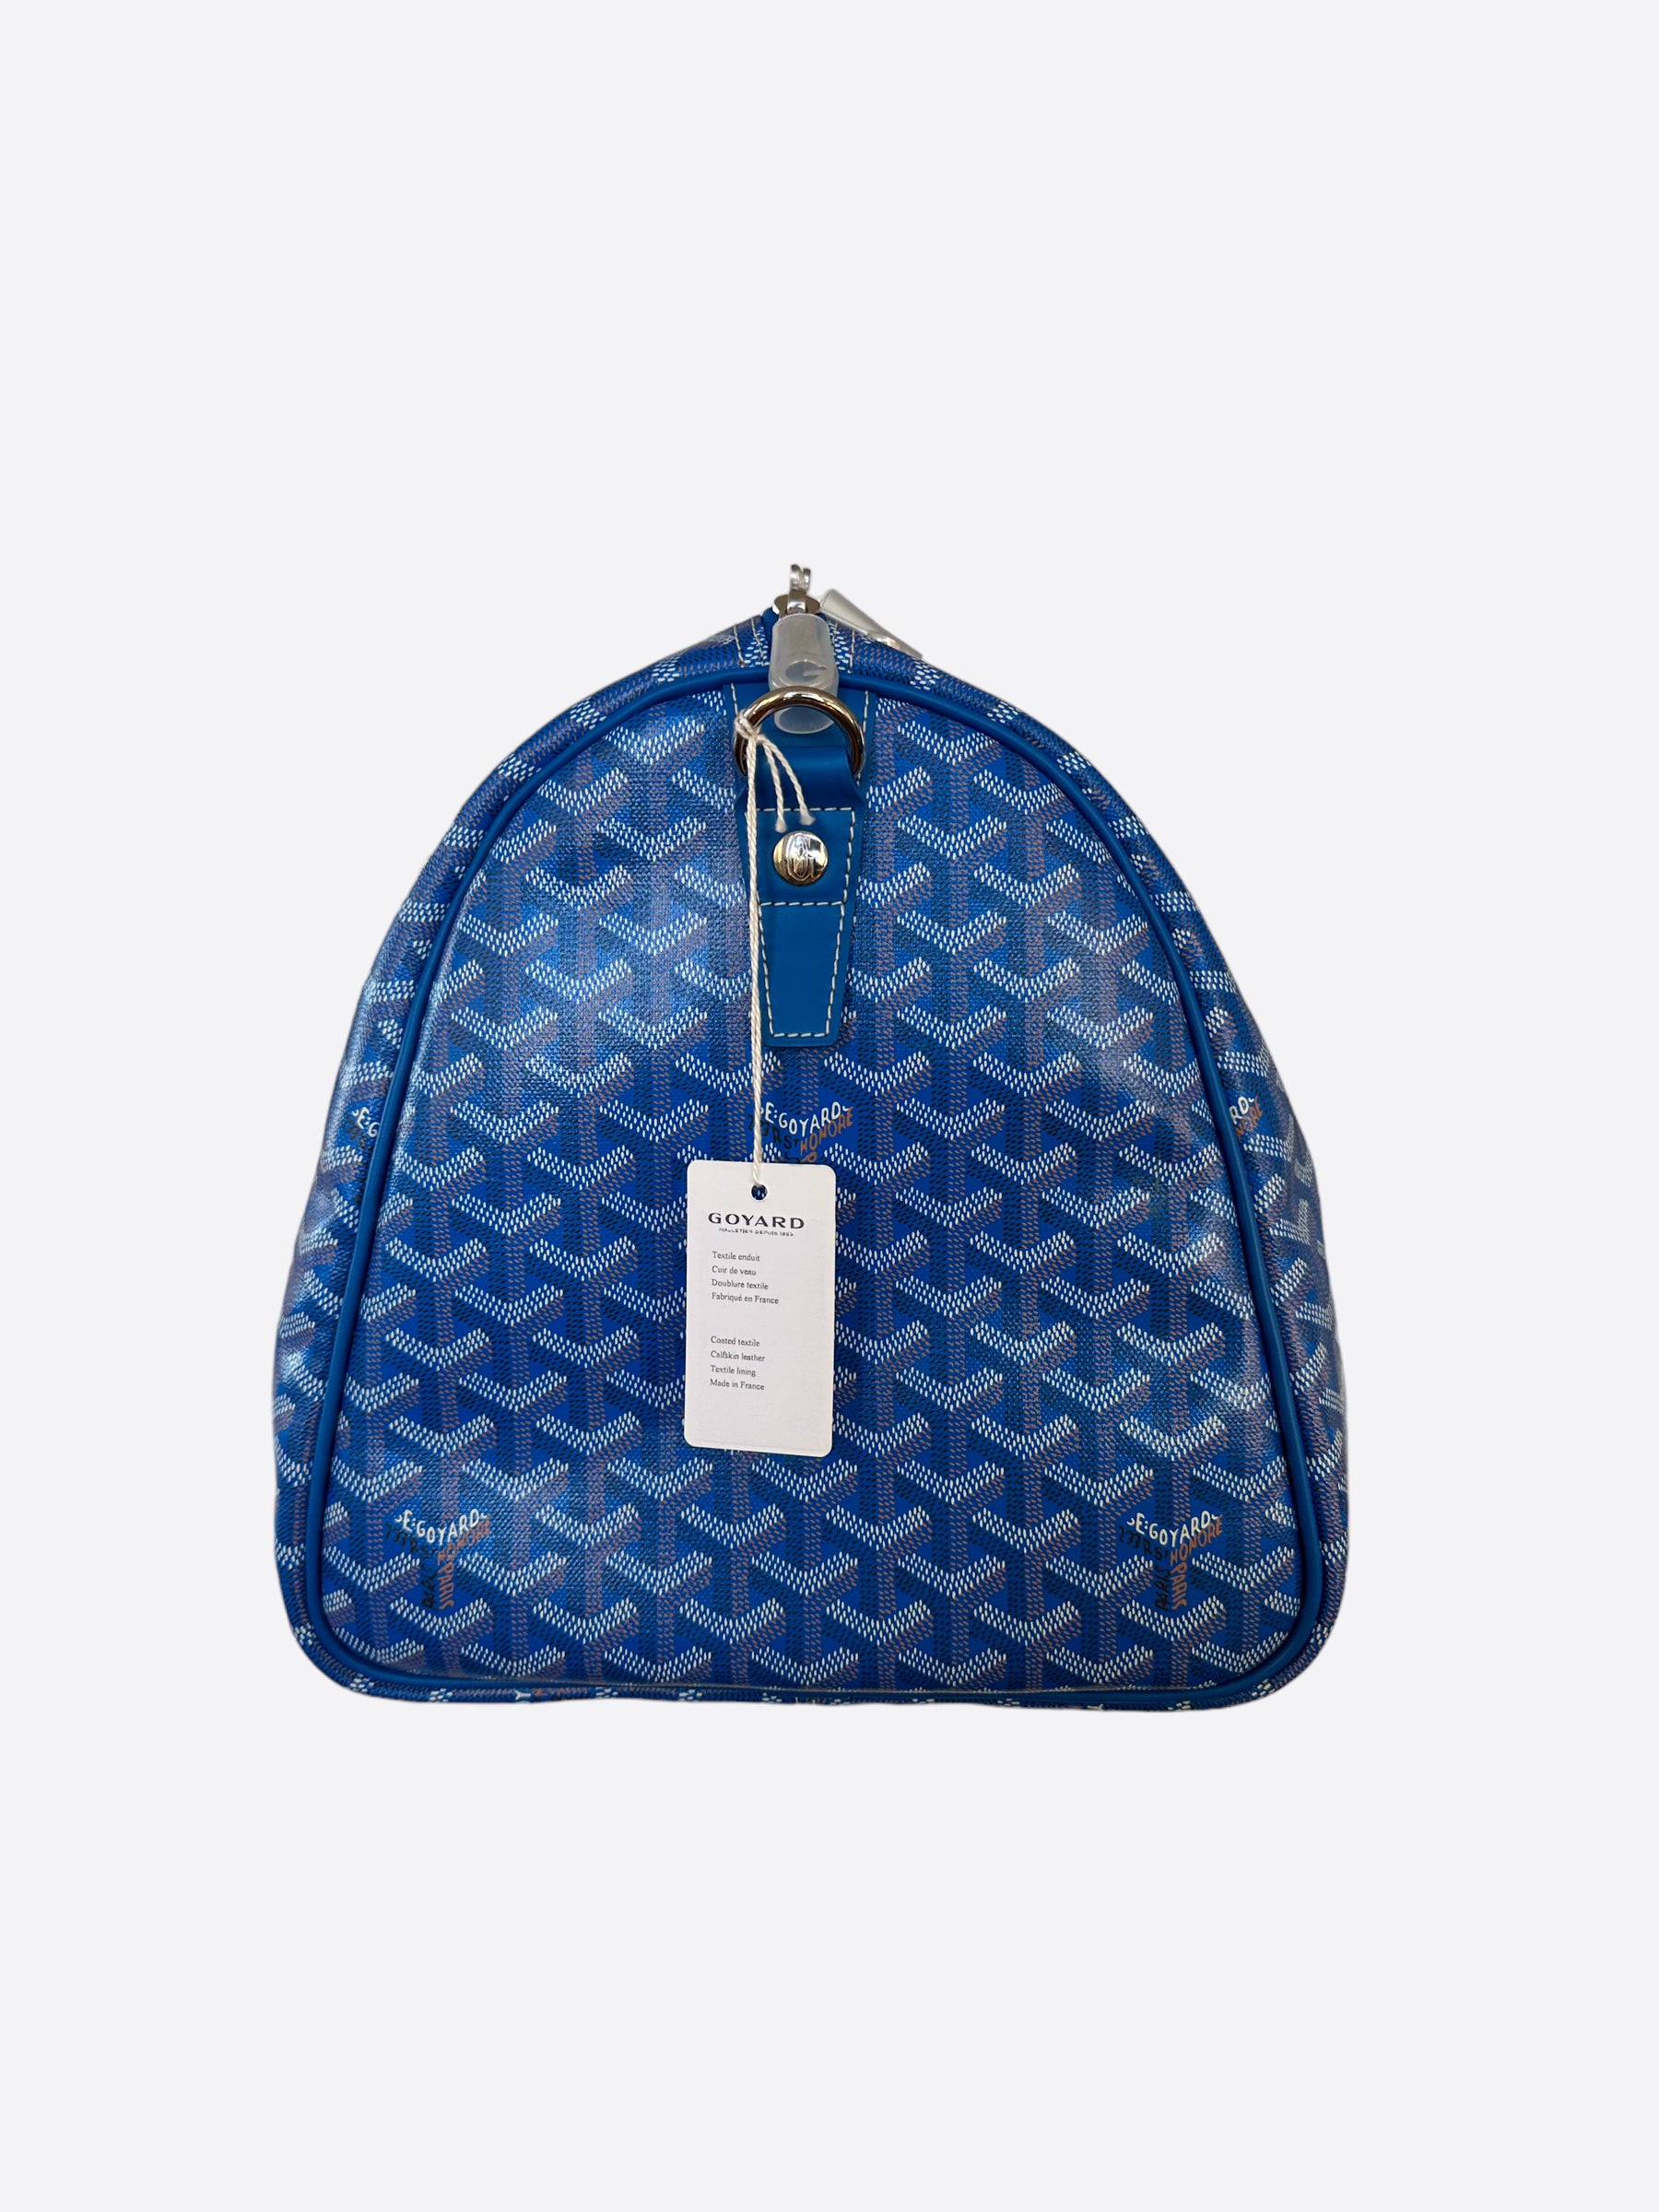 Goyard Blue Goyardine Boston 50 Duffle Bag